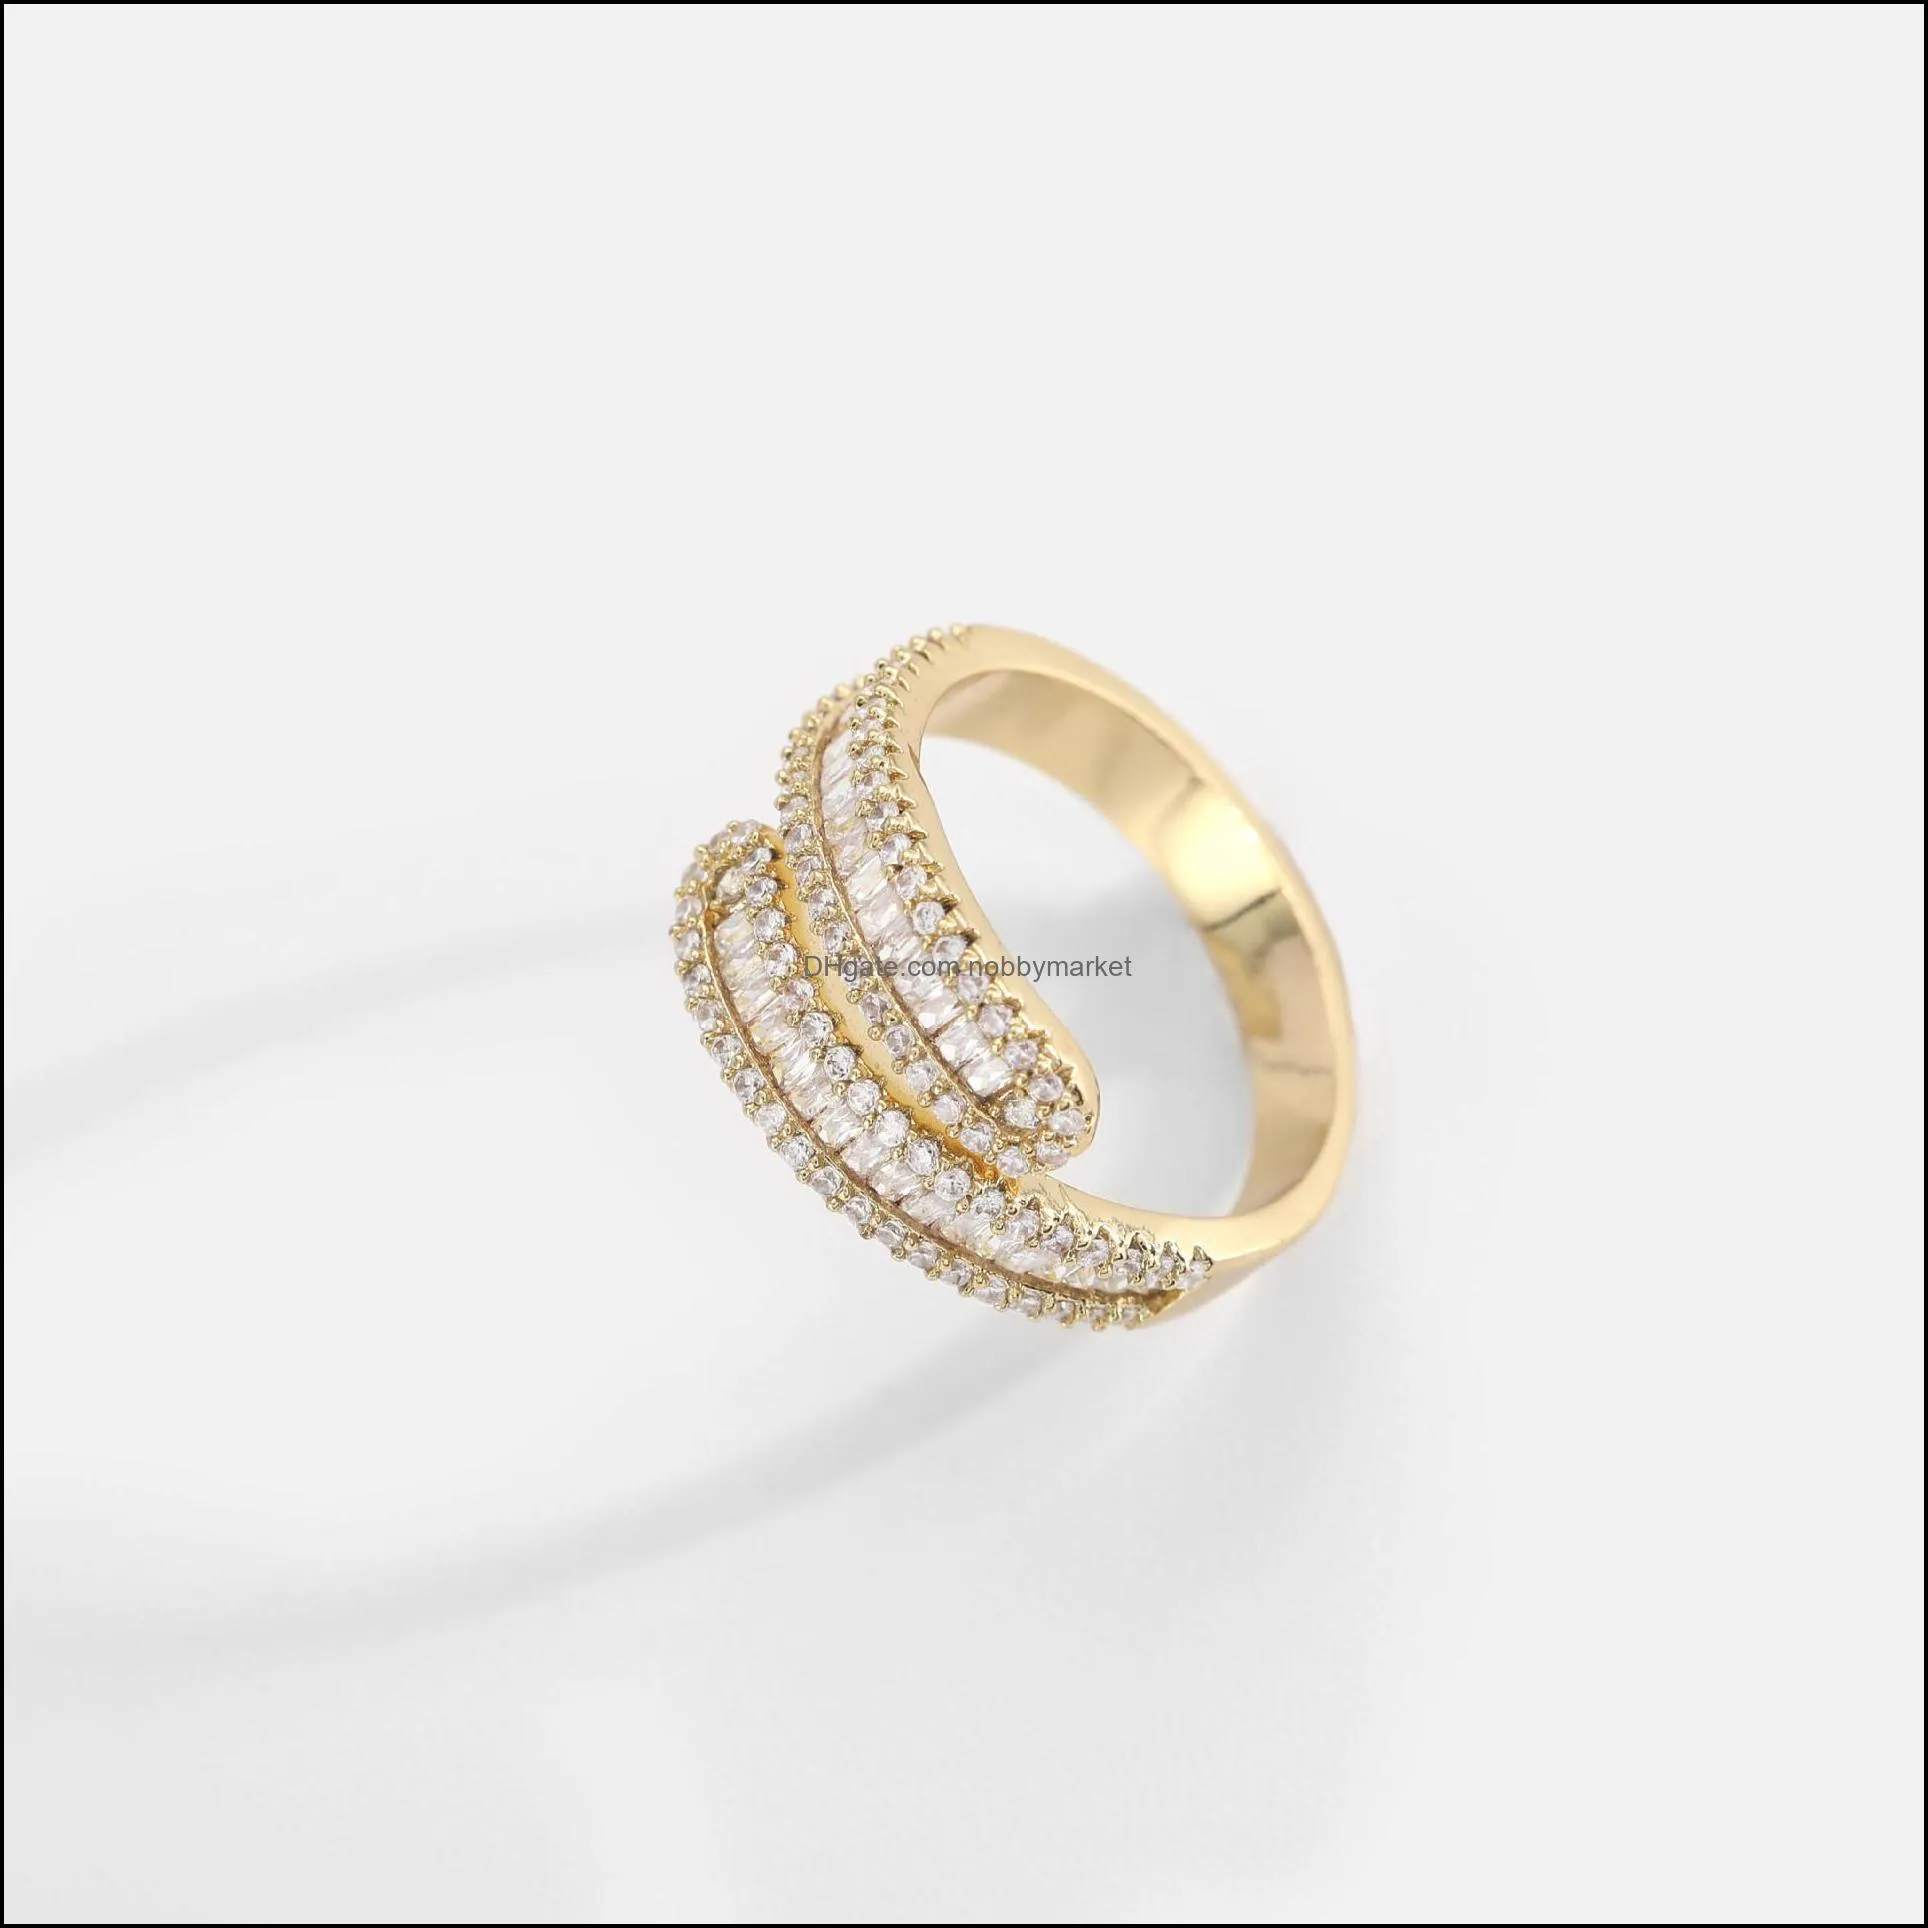 Ziron Stainless Steel 18k Gold Ring Adjustable Open Rings Women Anillos Jewelry Bague Femme Ringen Fidget Ring 2022 Waterproof